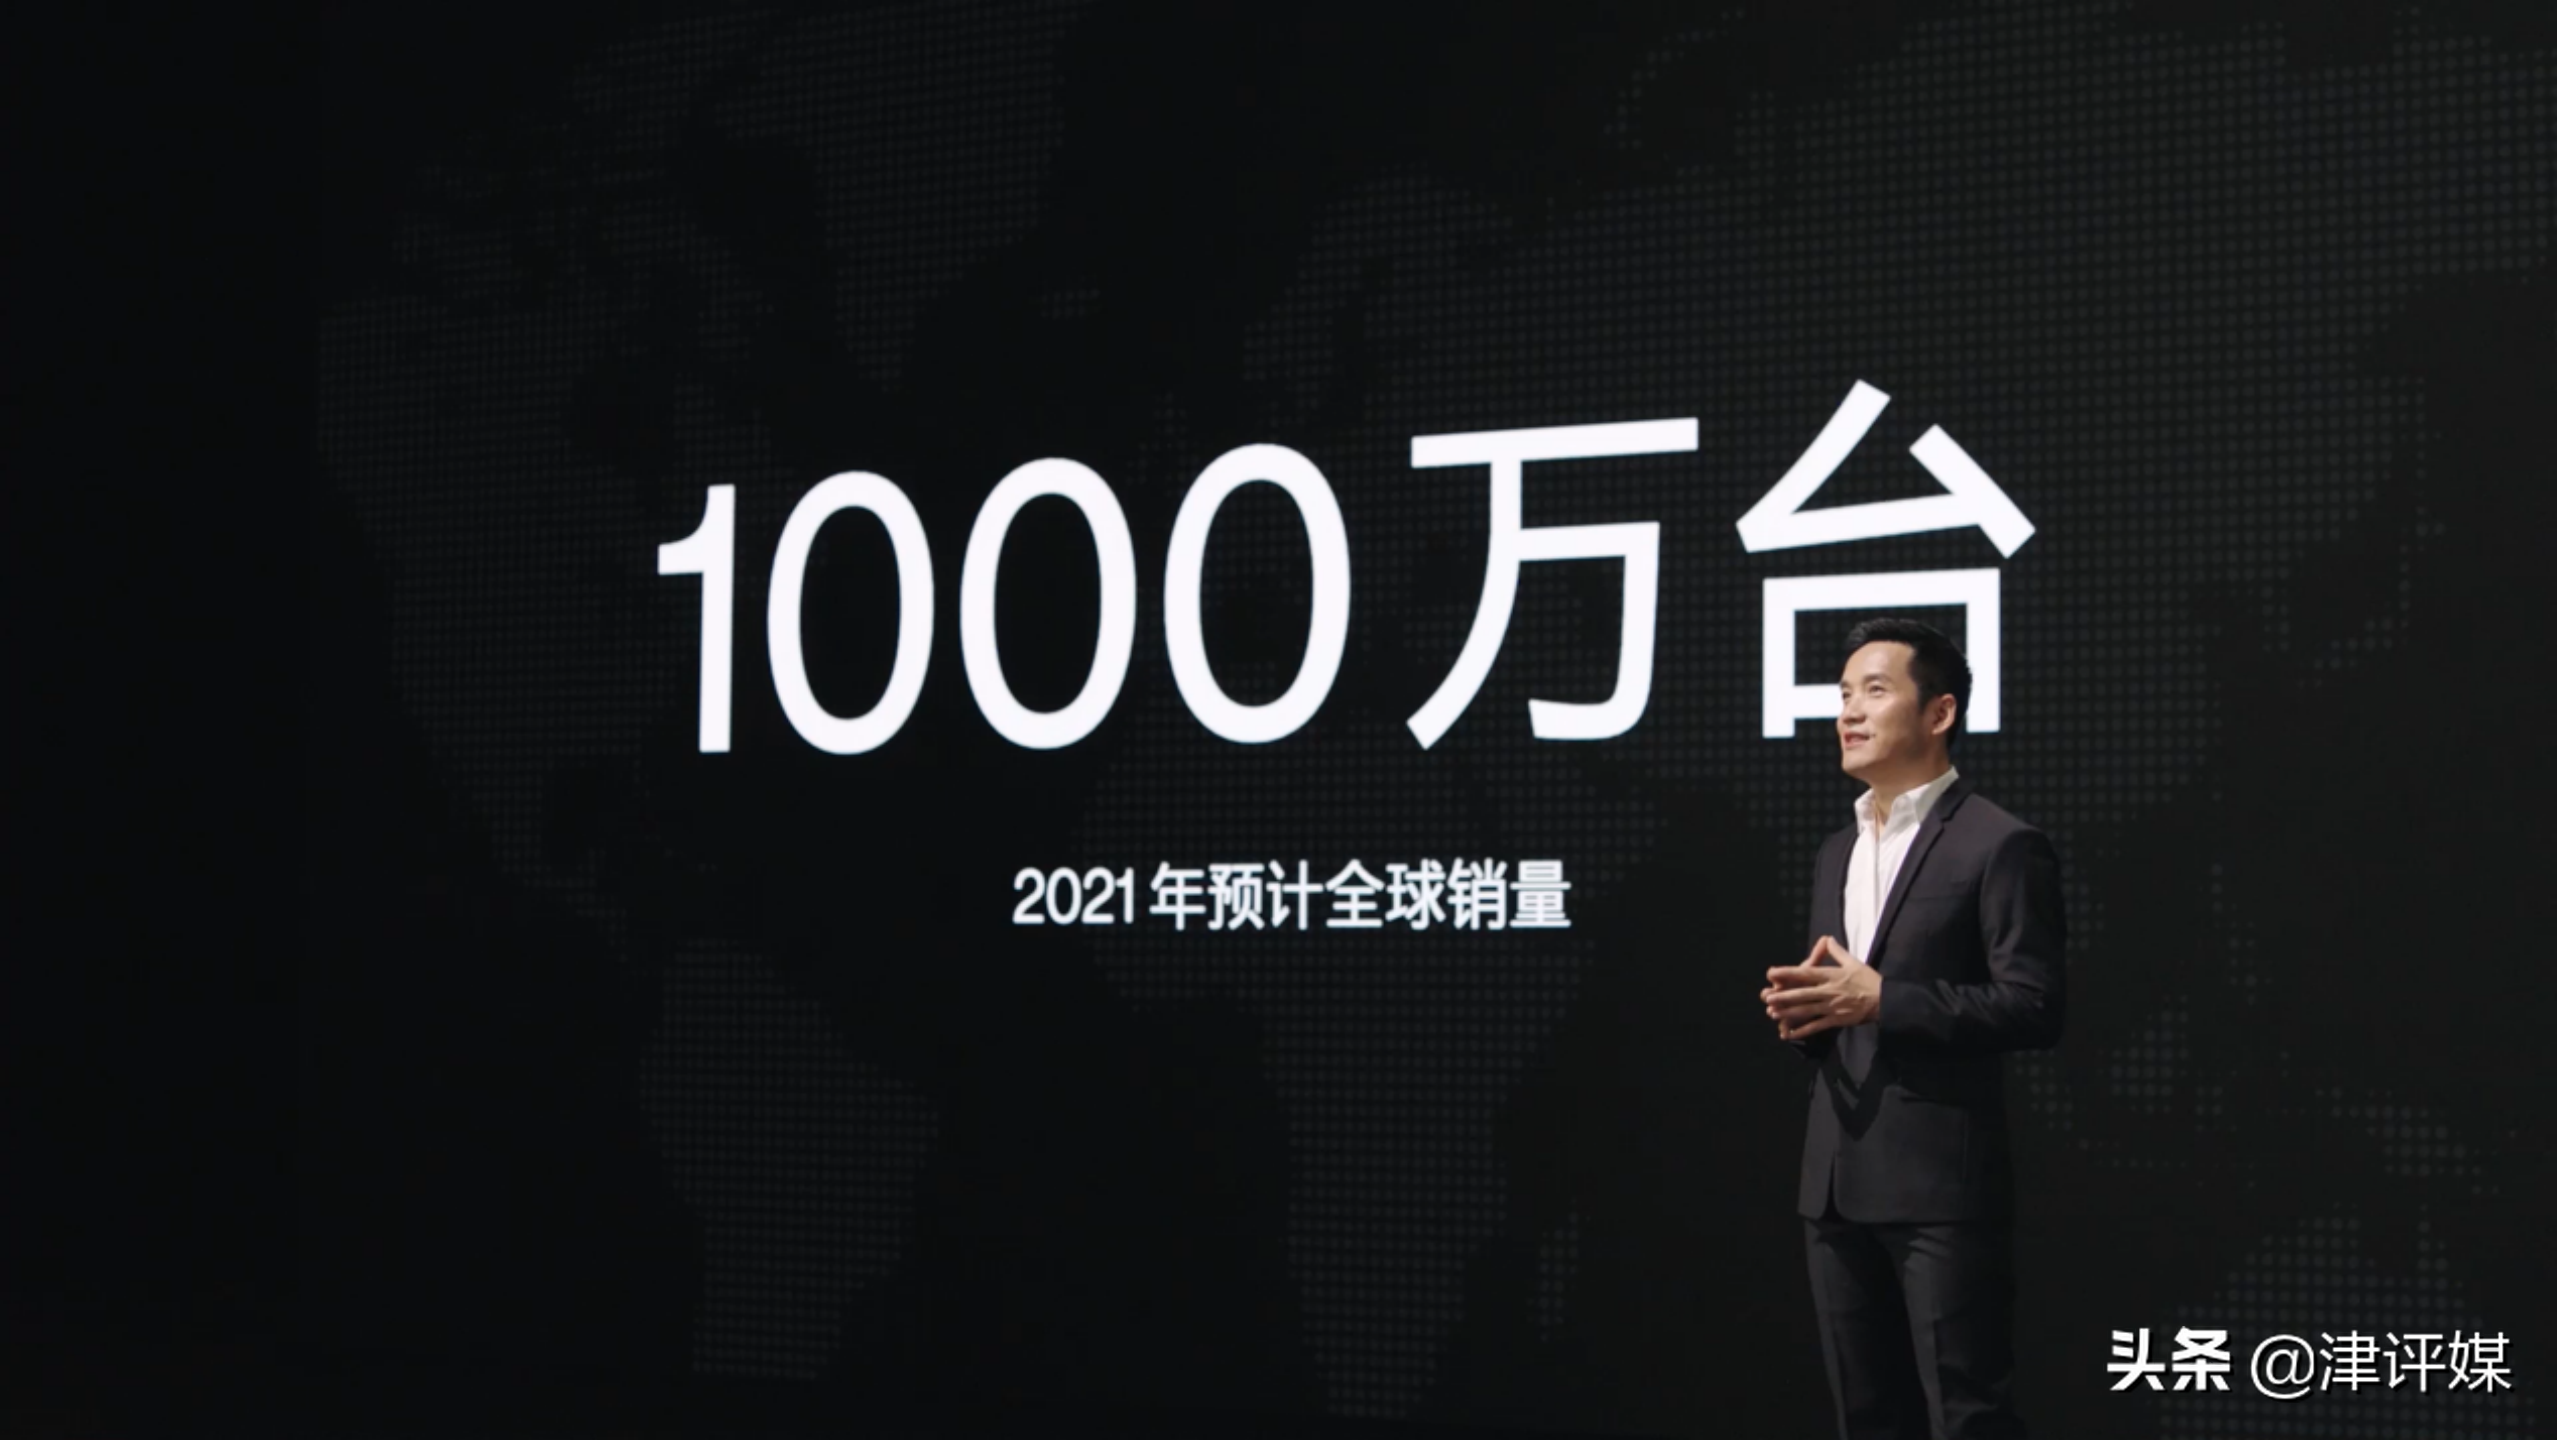 刘作虎：一加2021年全球销量将破千万